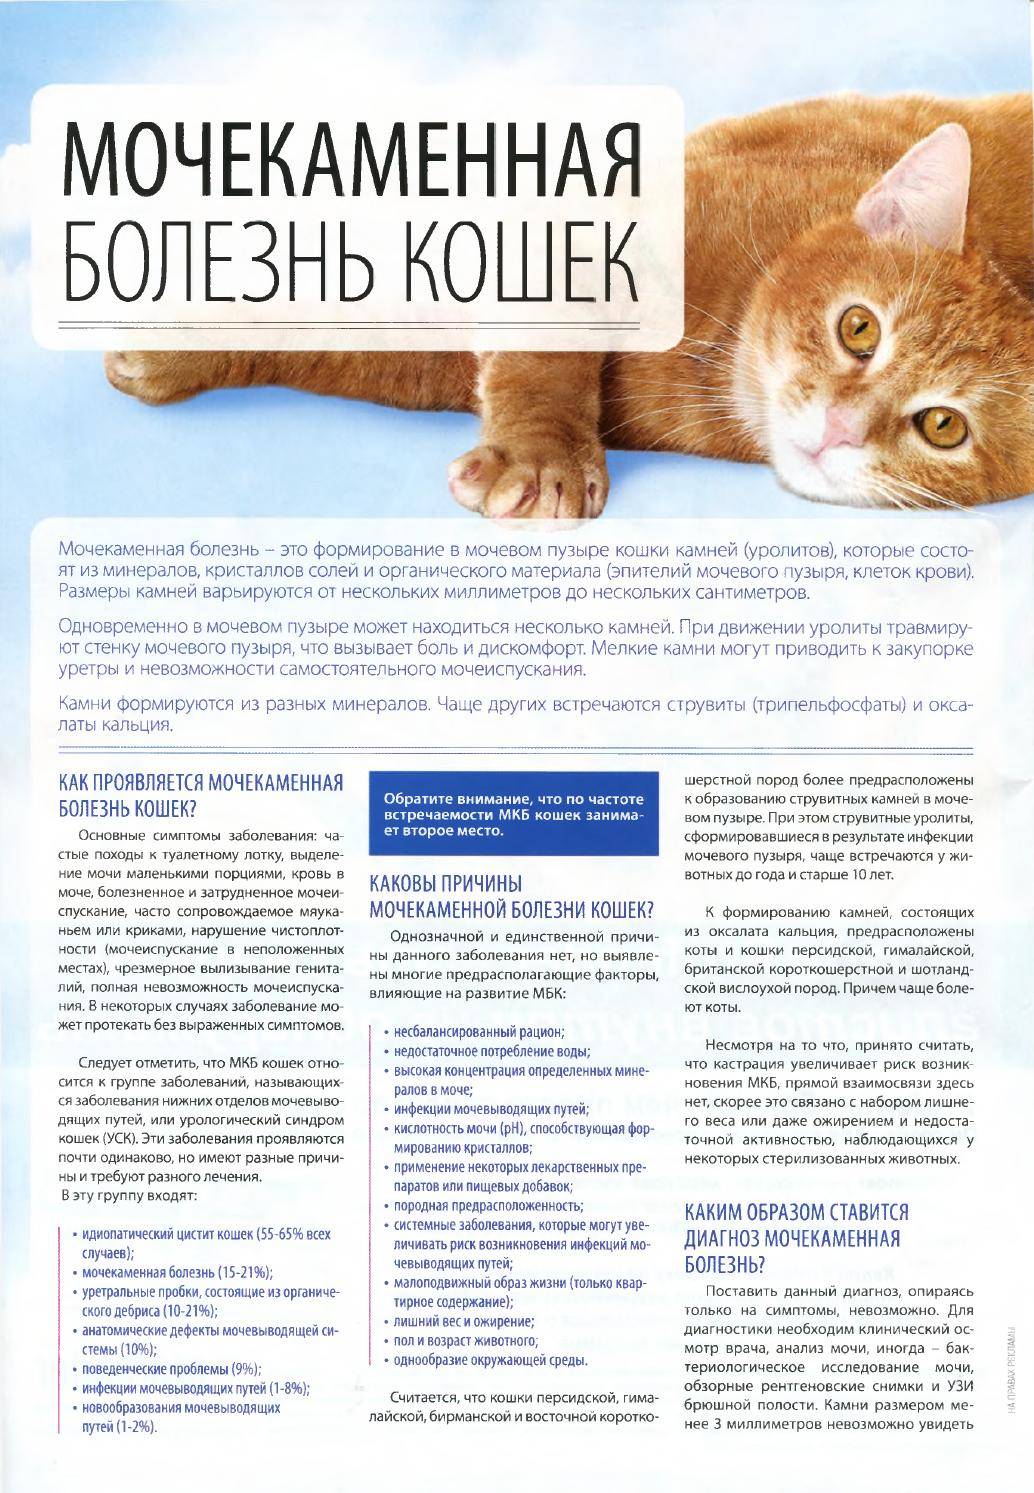 Мочекаменная болезнь у котов (кошек): симптомы, лечение, профилактика